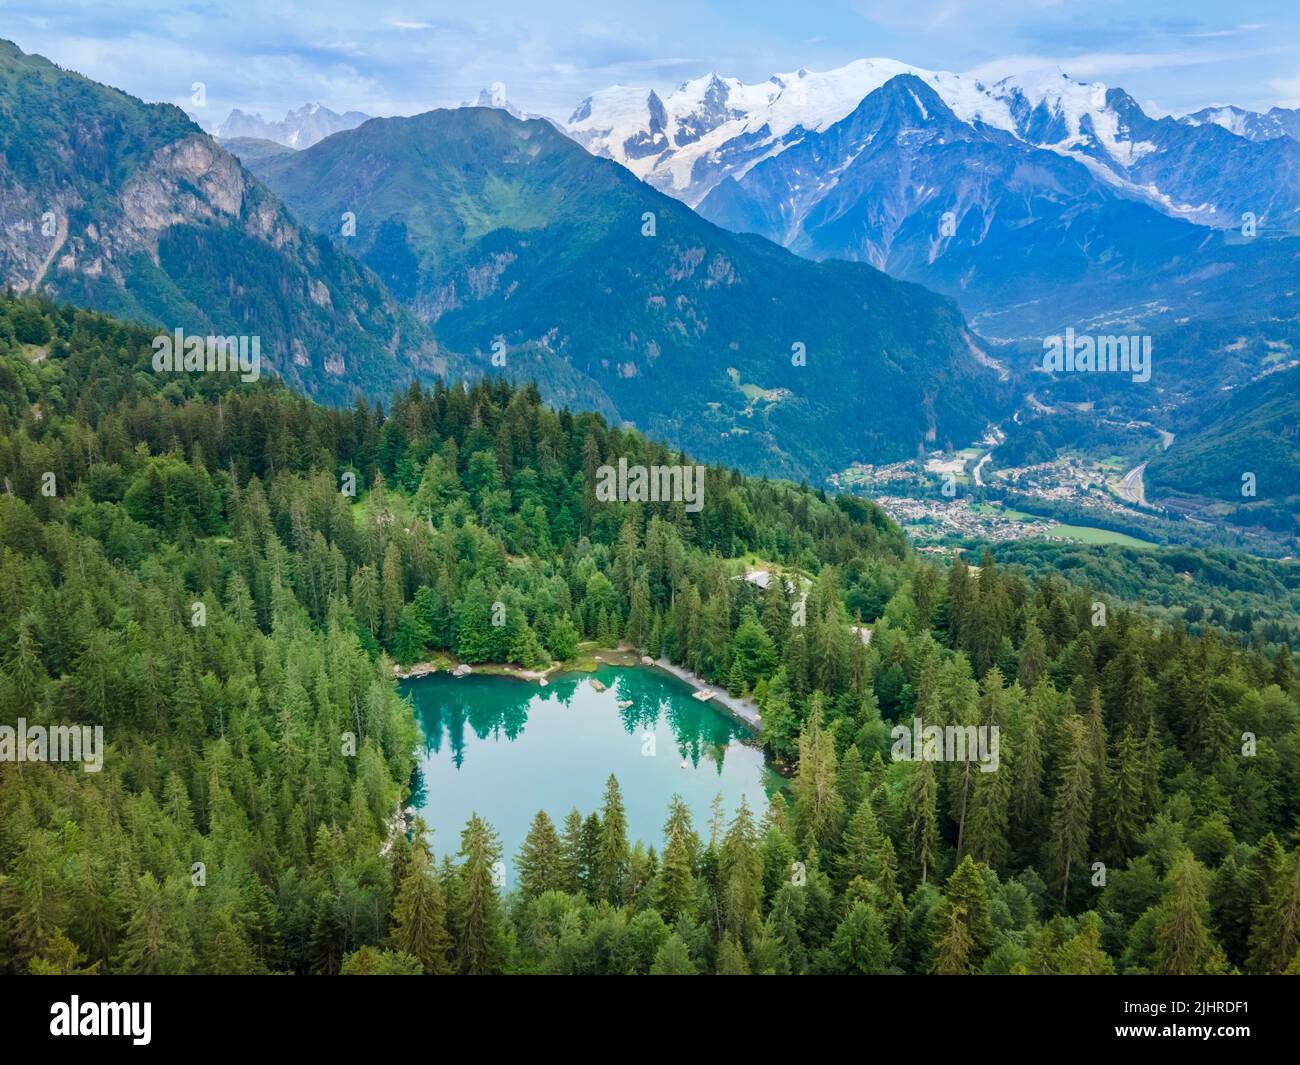 Vue sur le Mont blanc et le Lac Vert dans les montagnes des Alpes près de Chamonix, France. Paysage alpin français d'été avec forêt de sapins, lac et vallée verdoyante. Banque D'Images